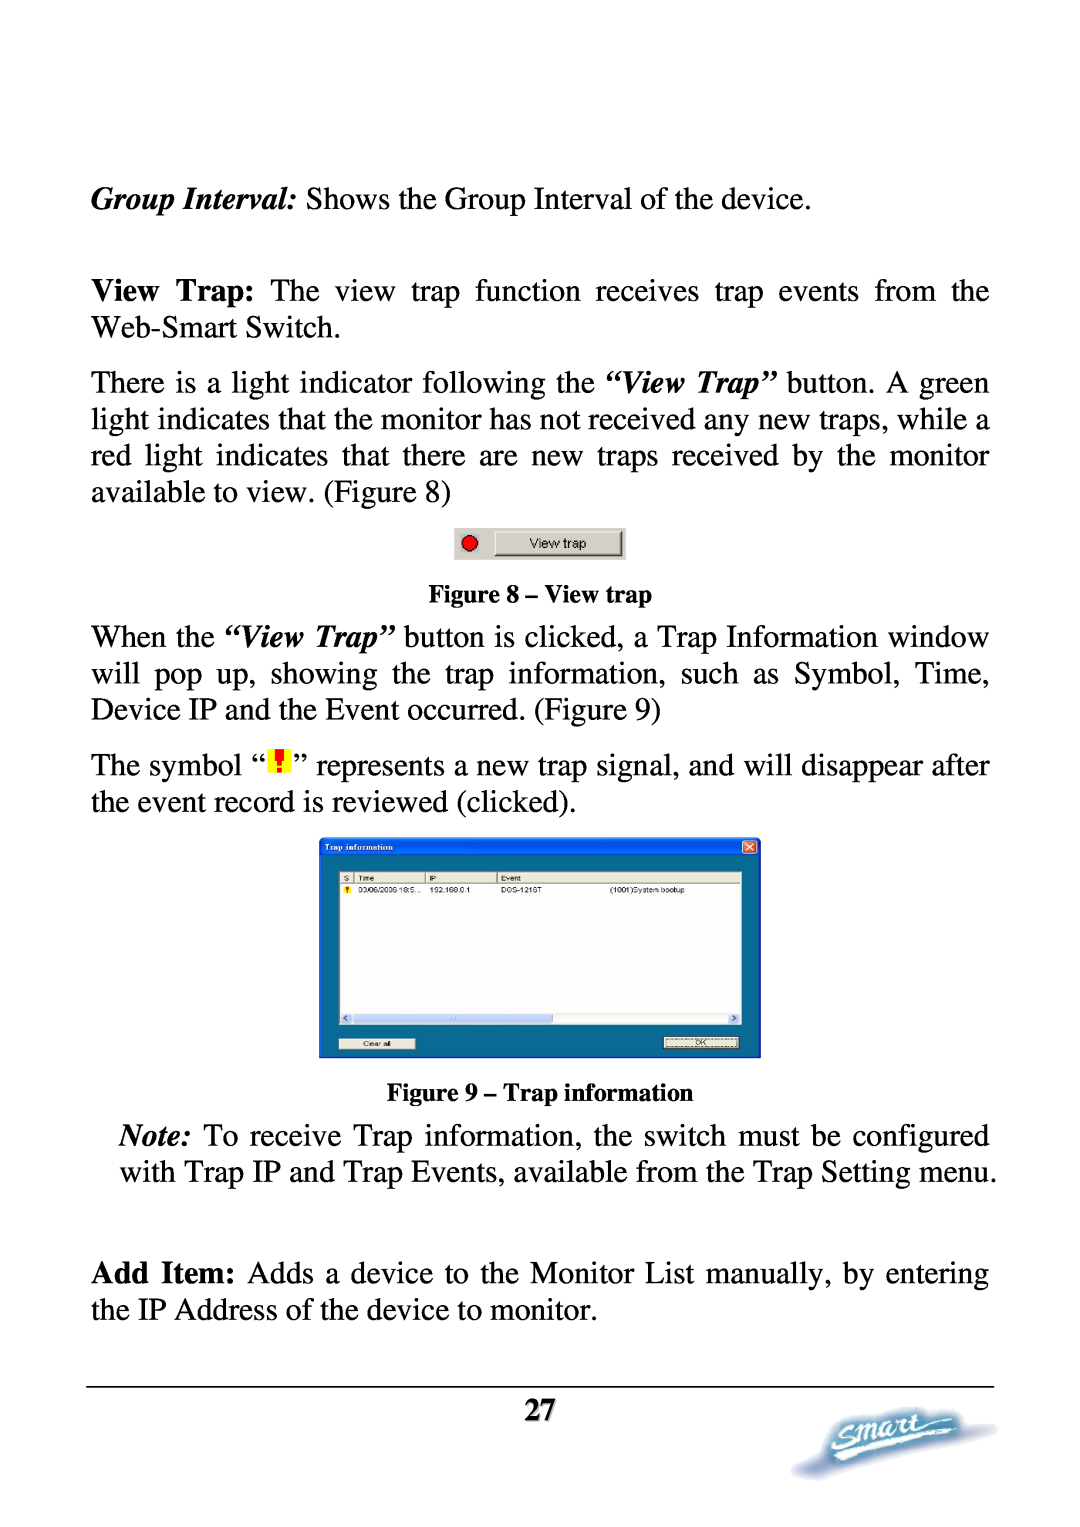 D-Link DES-1228P user manual View trap, Trap information 